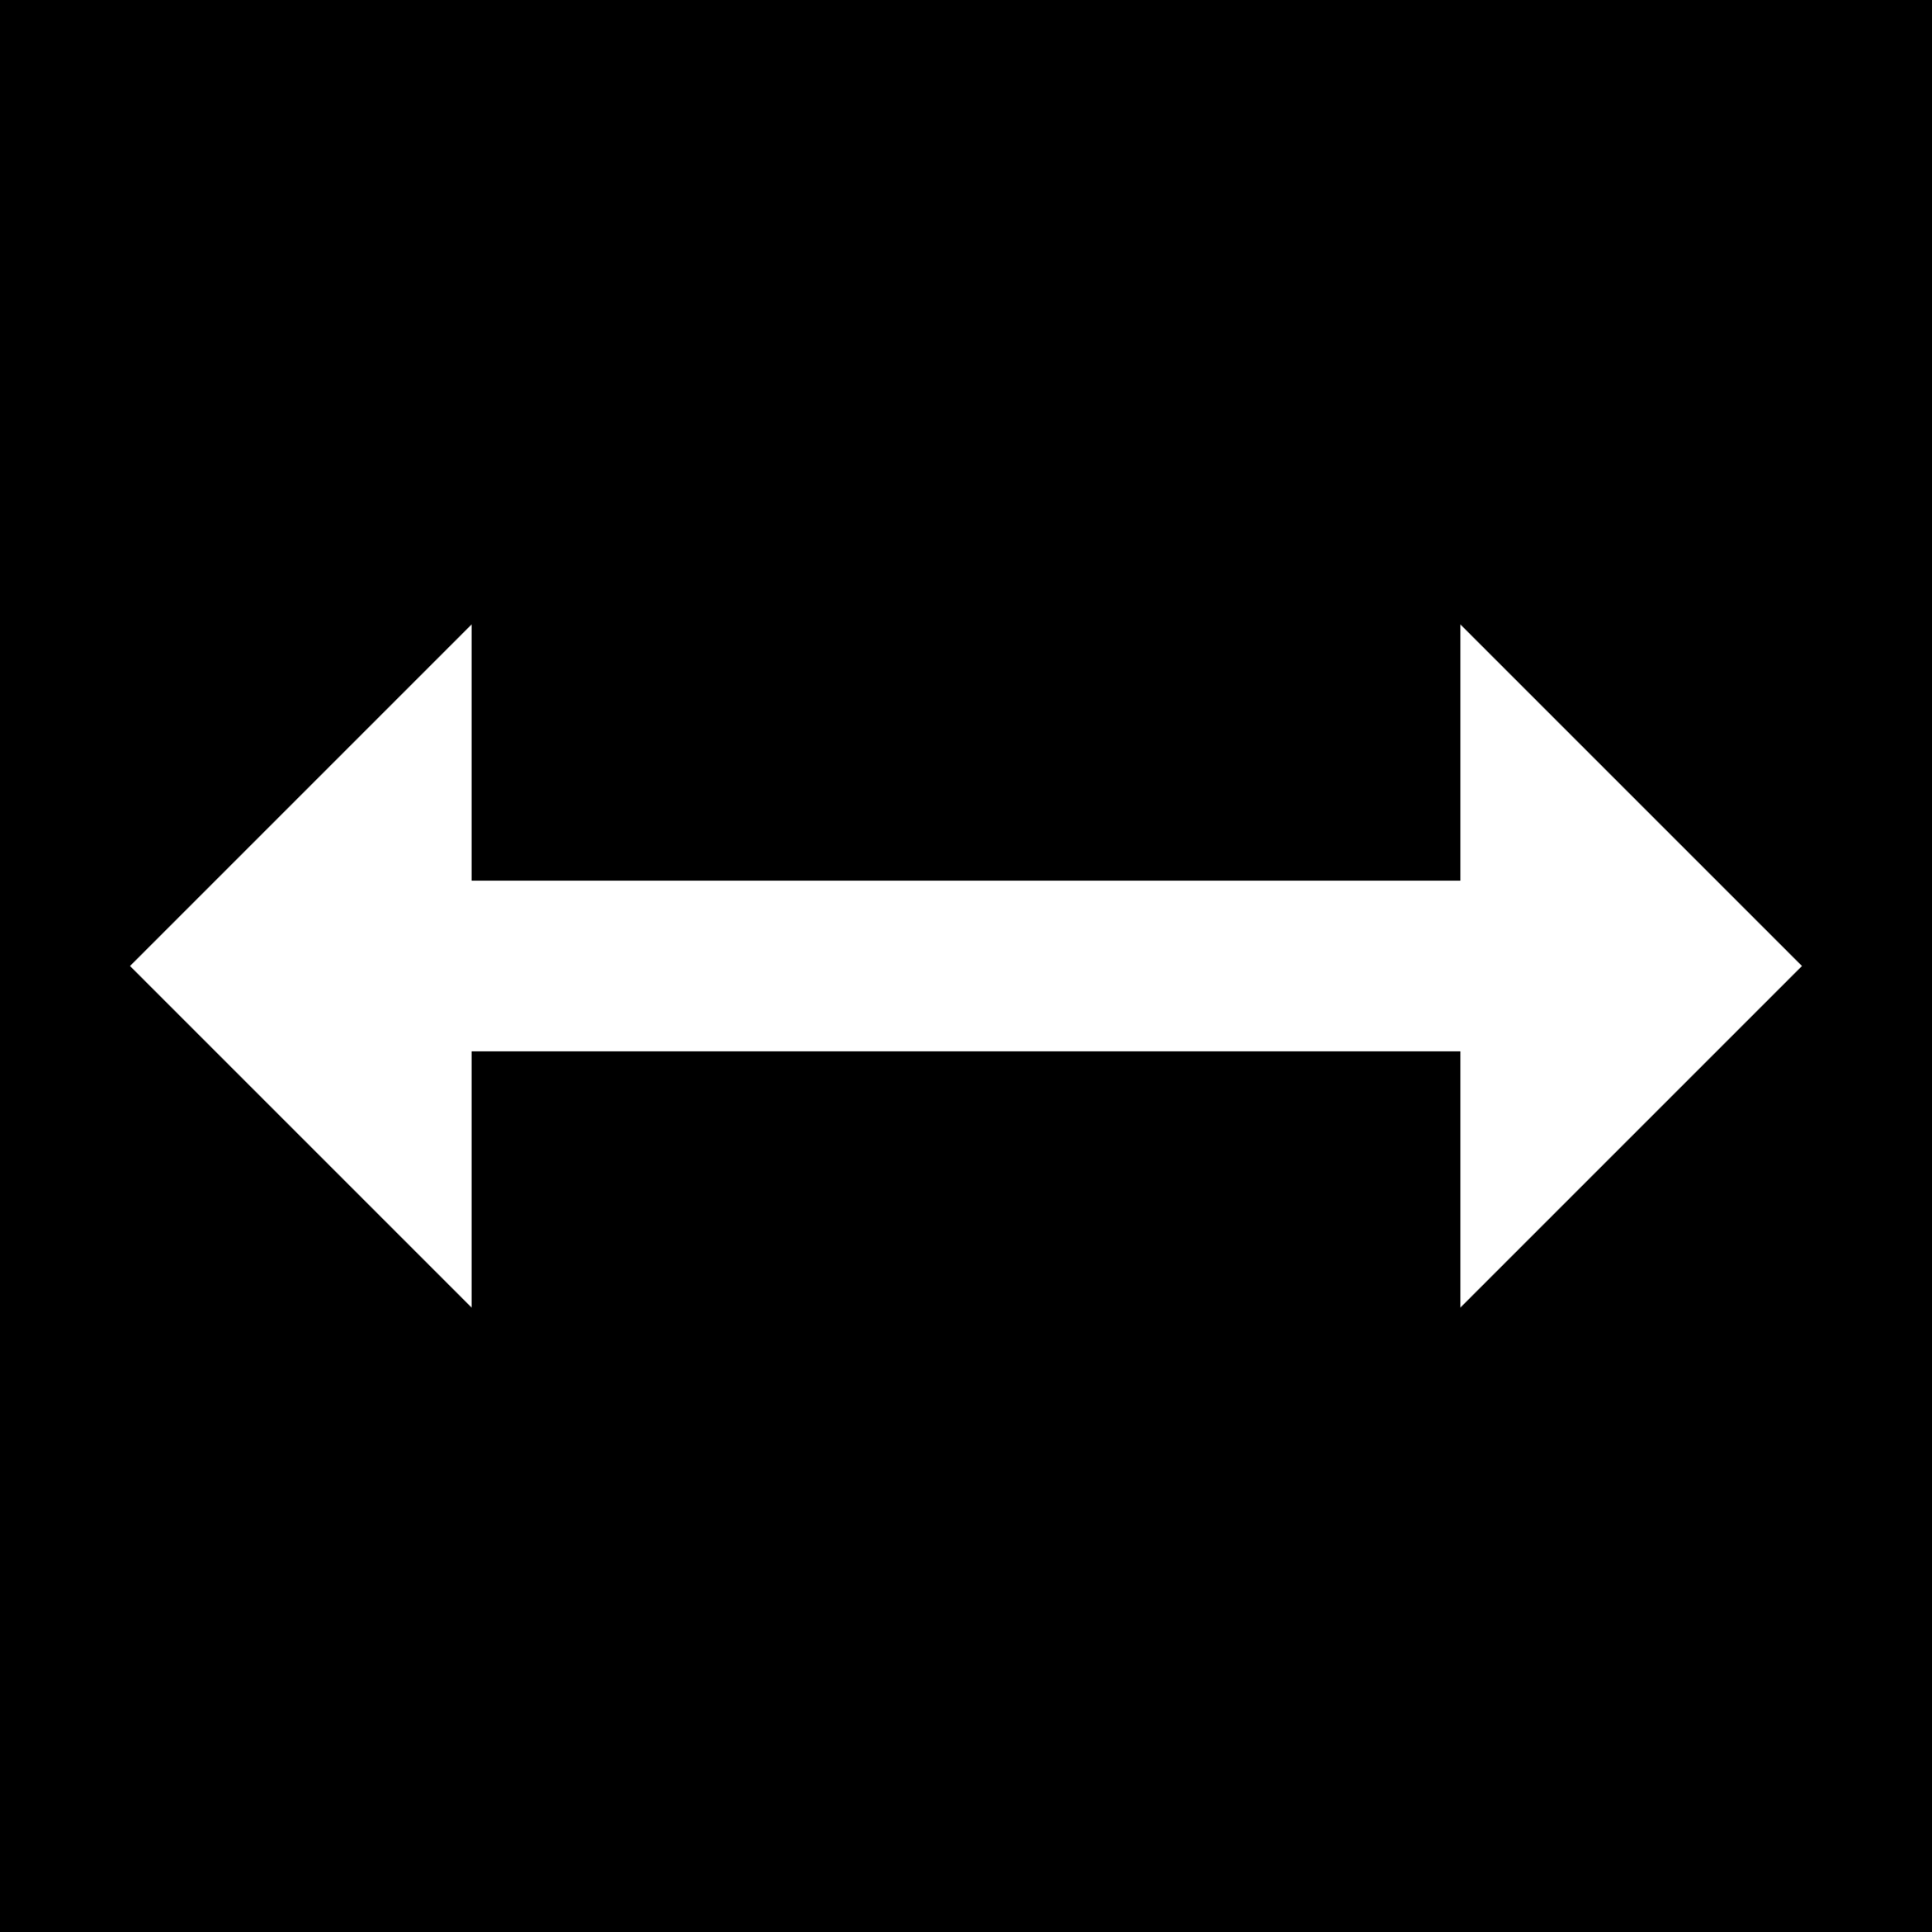 horizontal flip icon